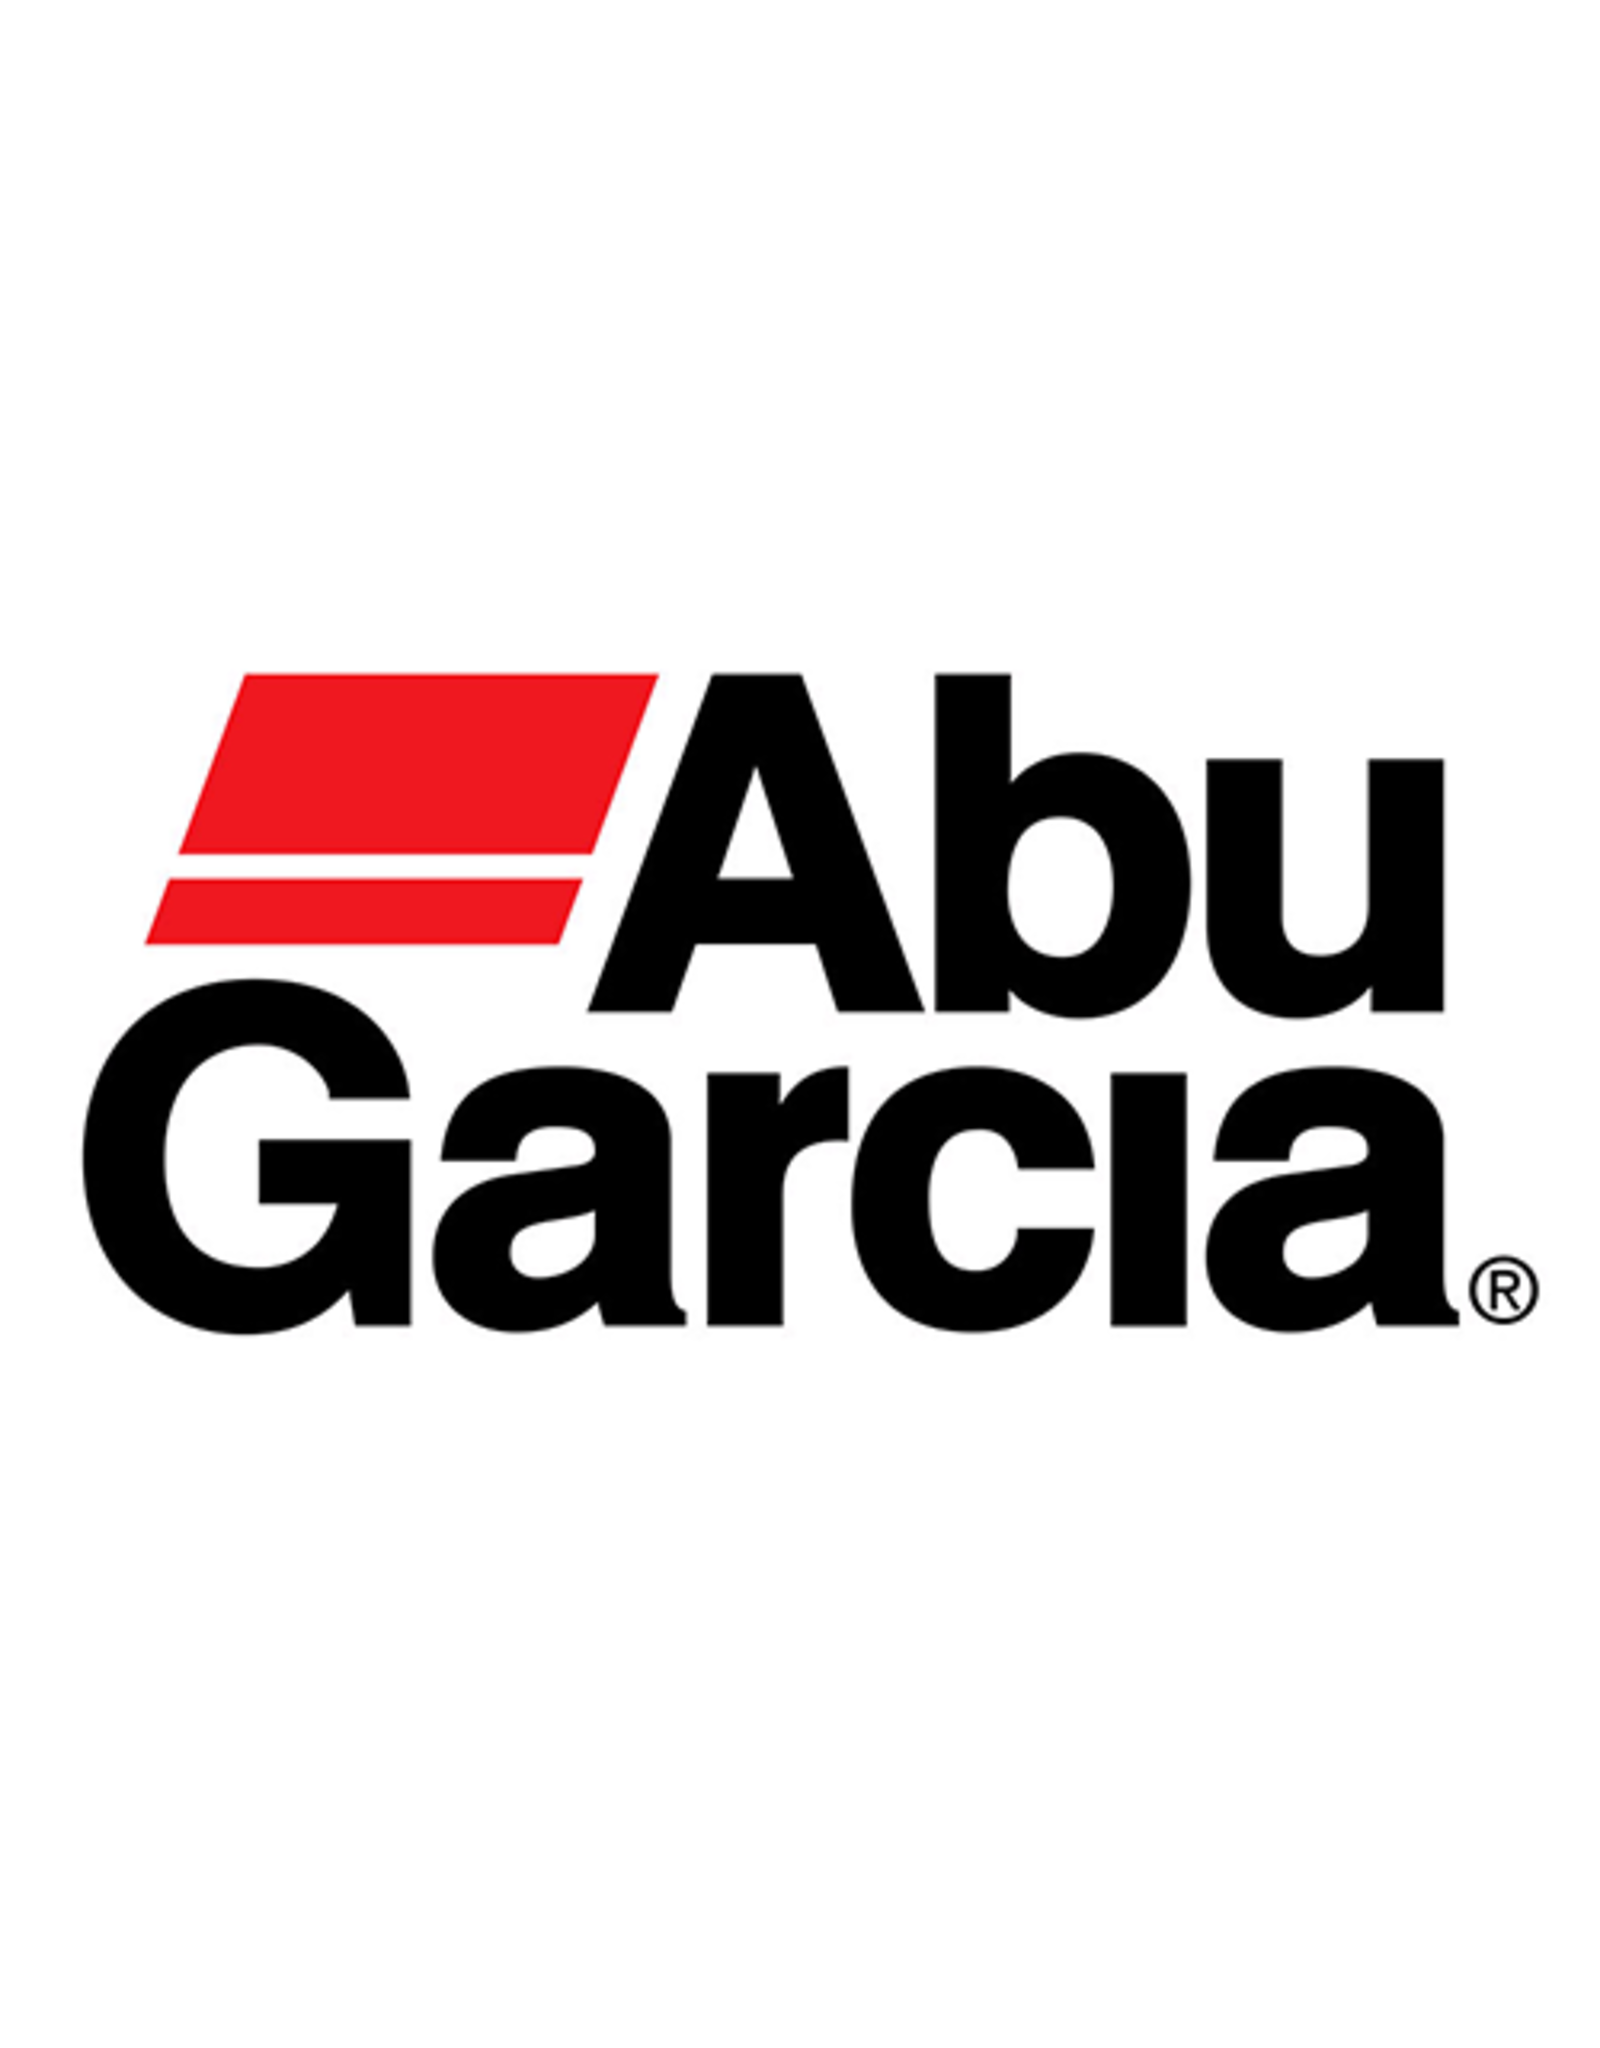 Abu Garcia 811550  FRAME